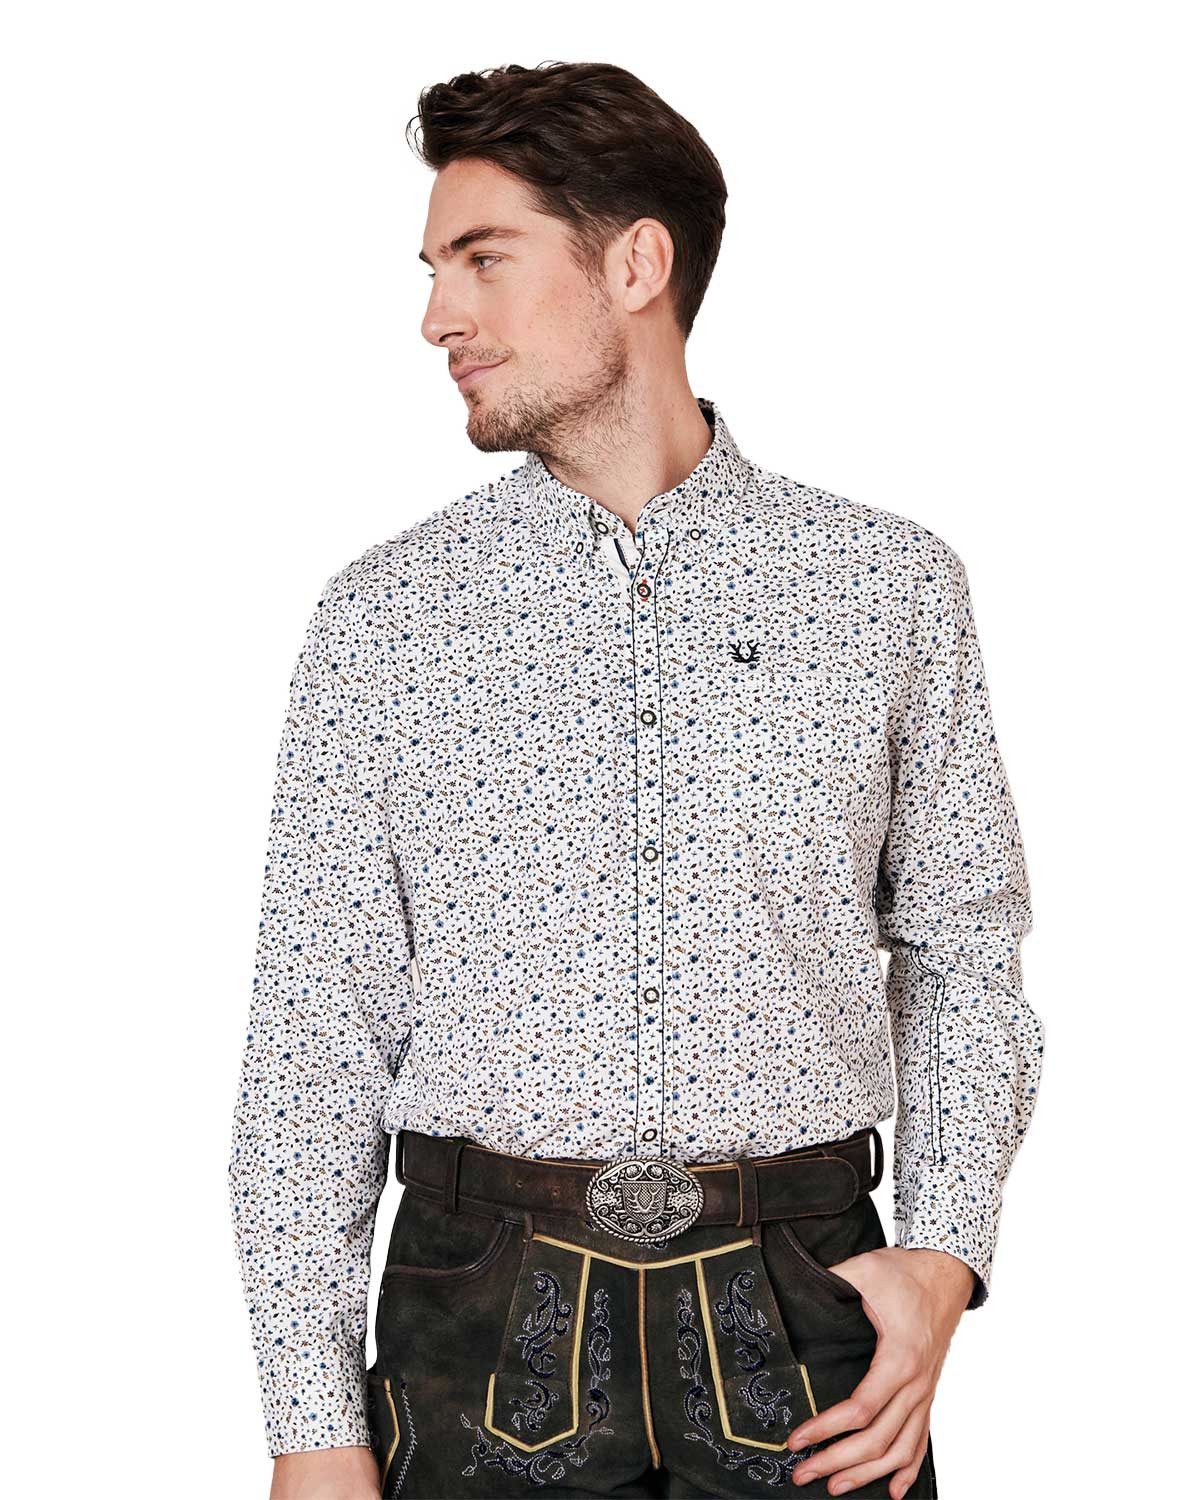 KRÜGER BUAM Trachtenhemd Trachtenhemd 'Leon' mit Muster 911767, Weiß Blau